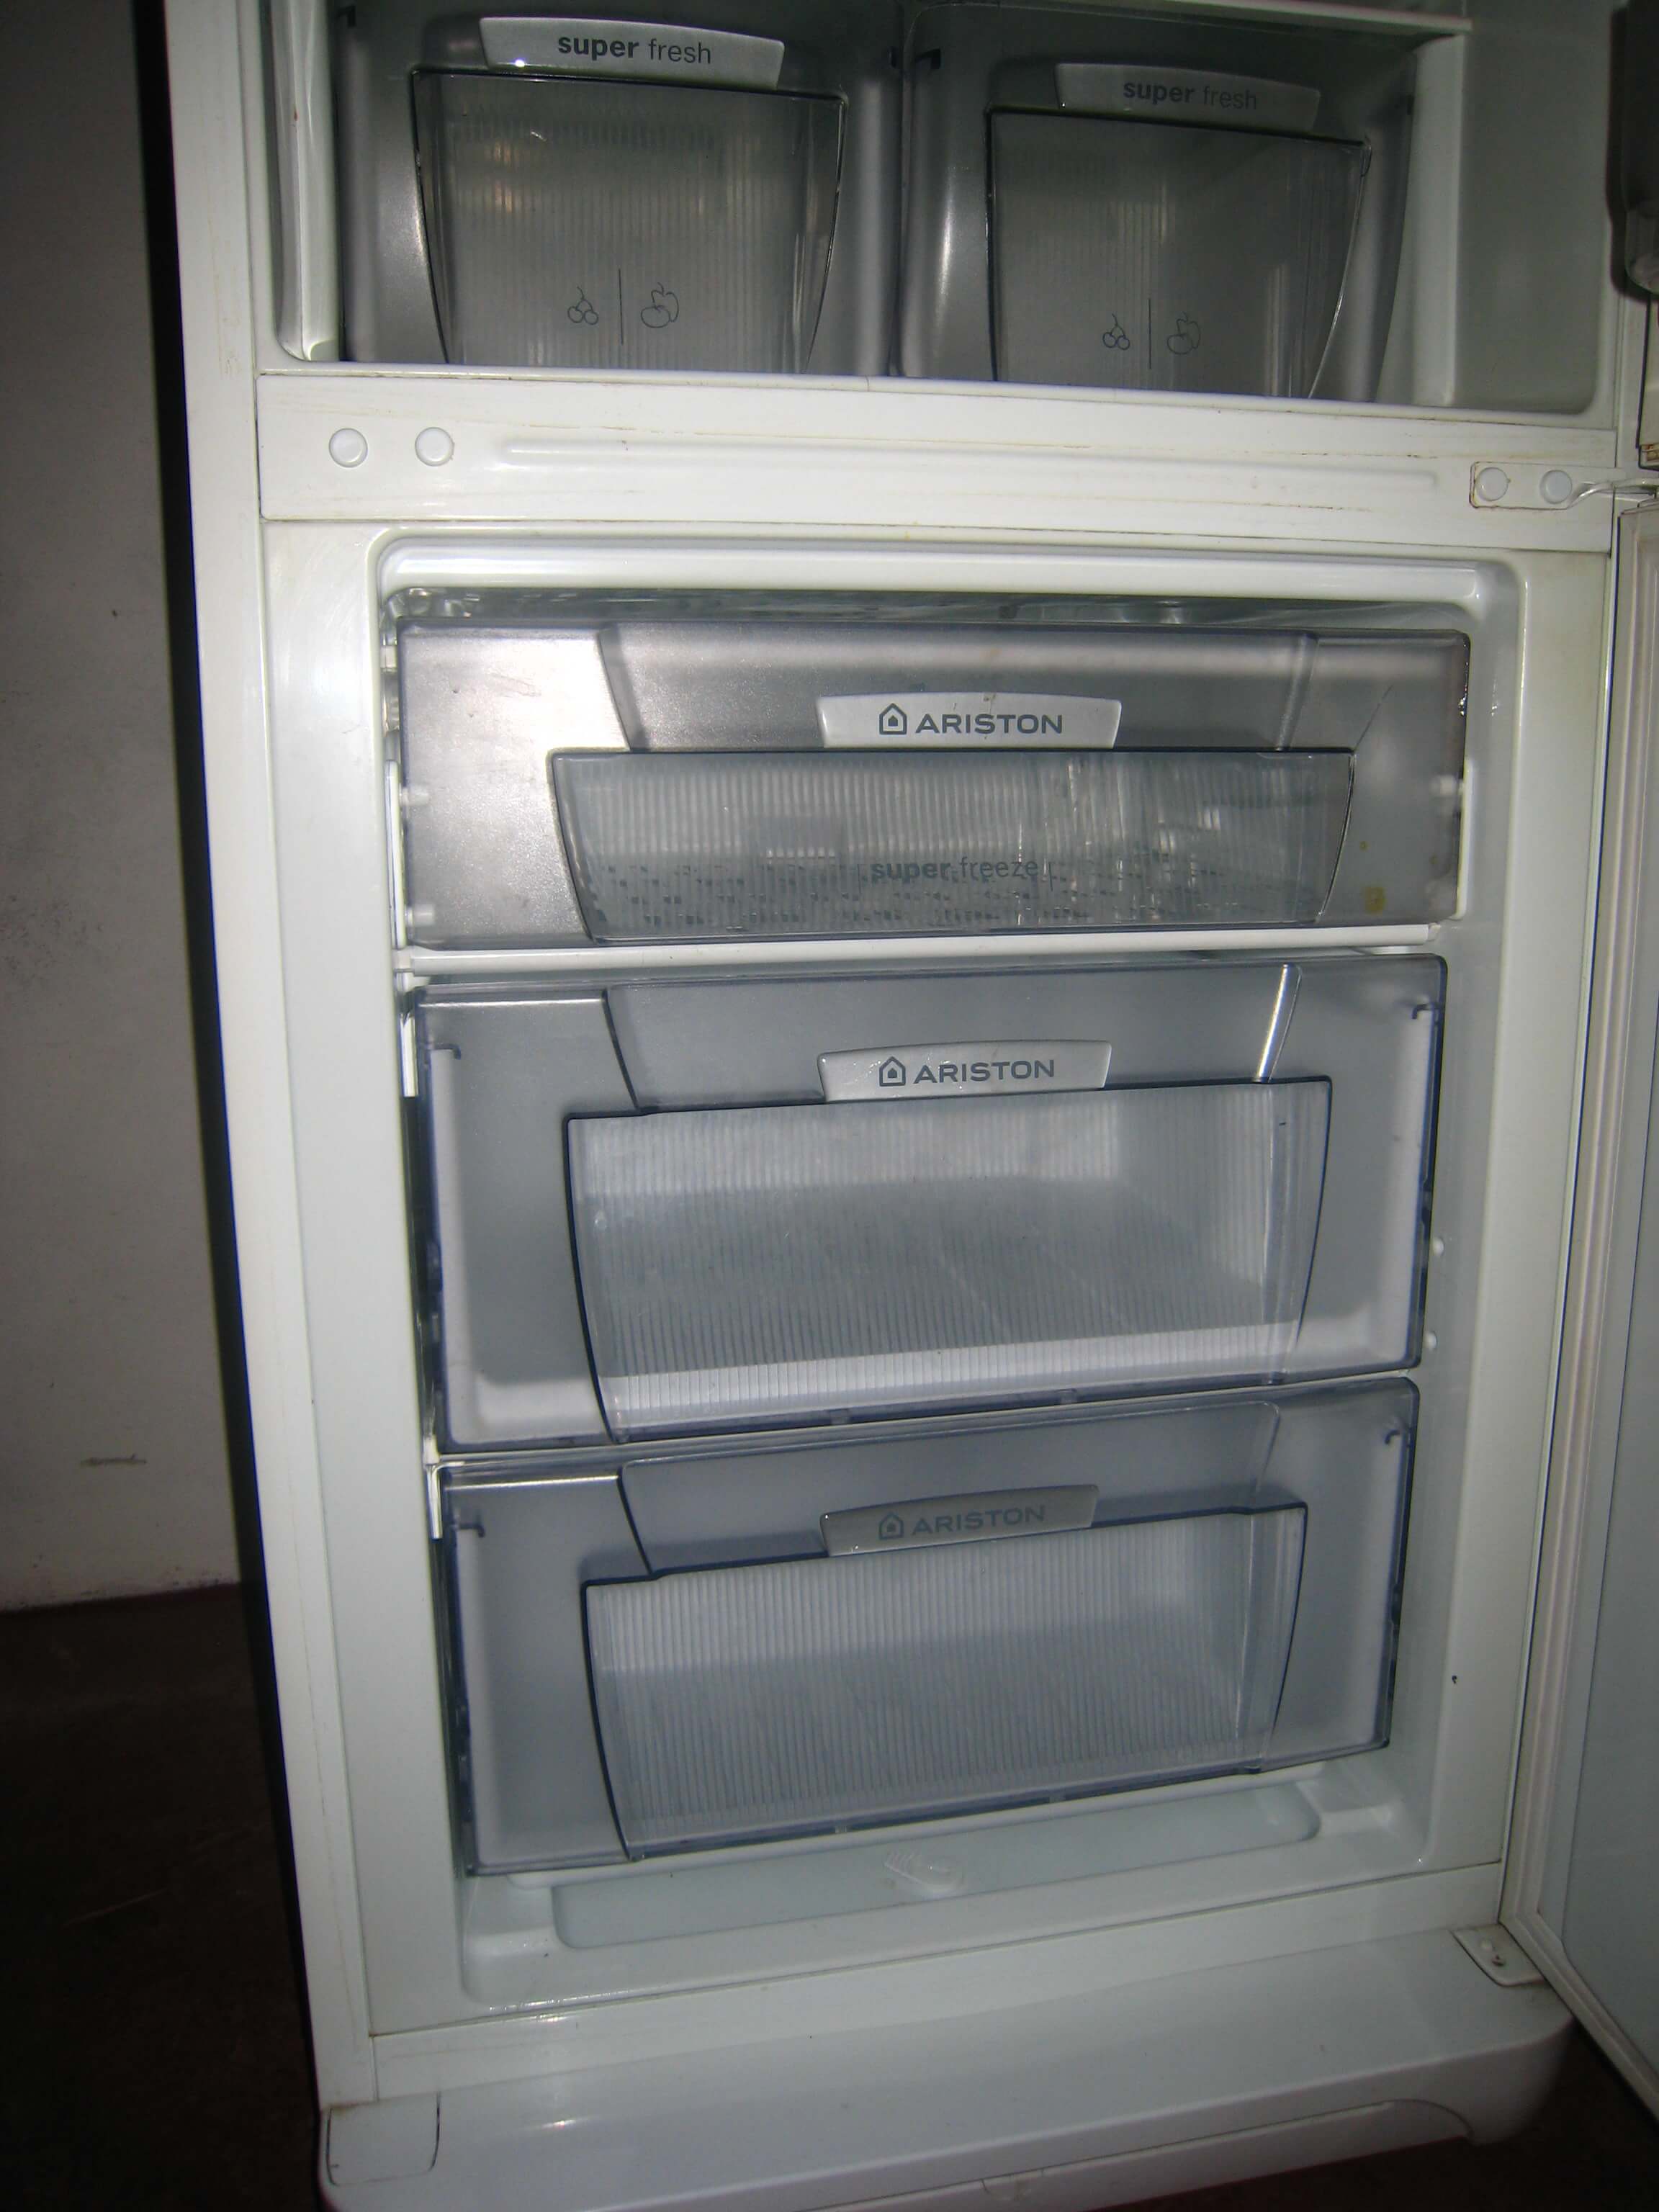 Холодильник выбивает пробки или автомат